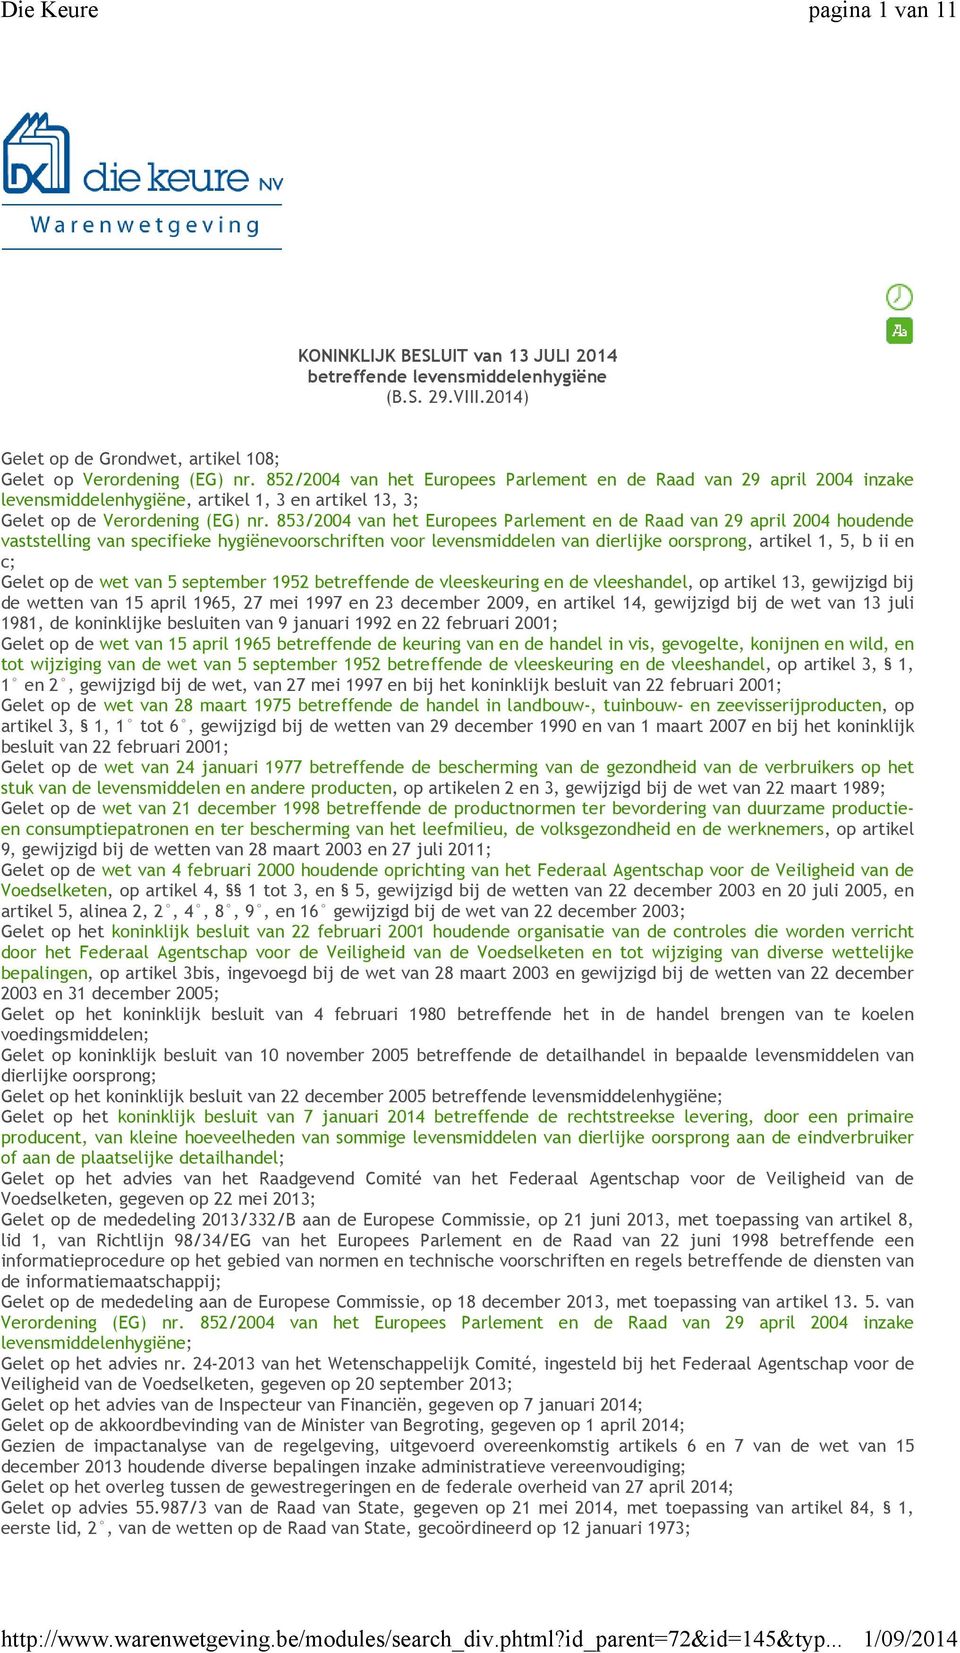 853/2004 van het Europees Parlement en de Raad van 29 april 2004 houdende vaststelling van specifieke hygiënevoorschriften voor levensmiddelen van dierlijke oorsprong, artikel 1, 5, b ii en c; Gelet